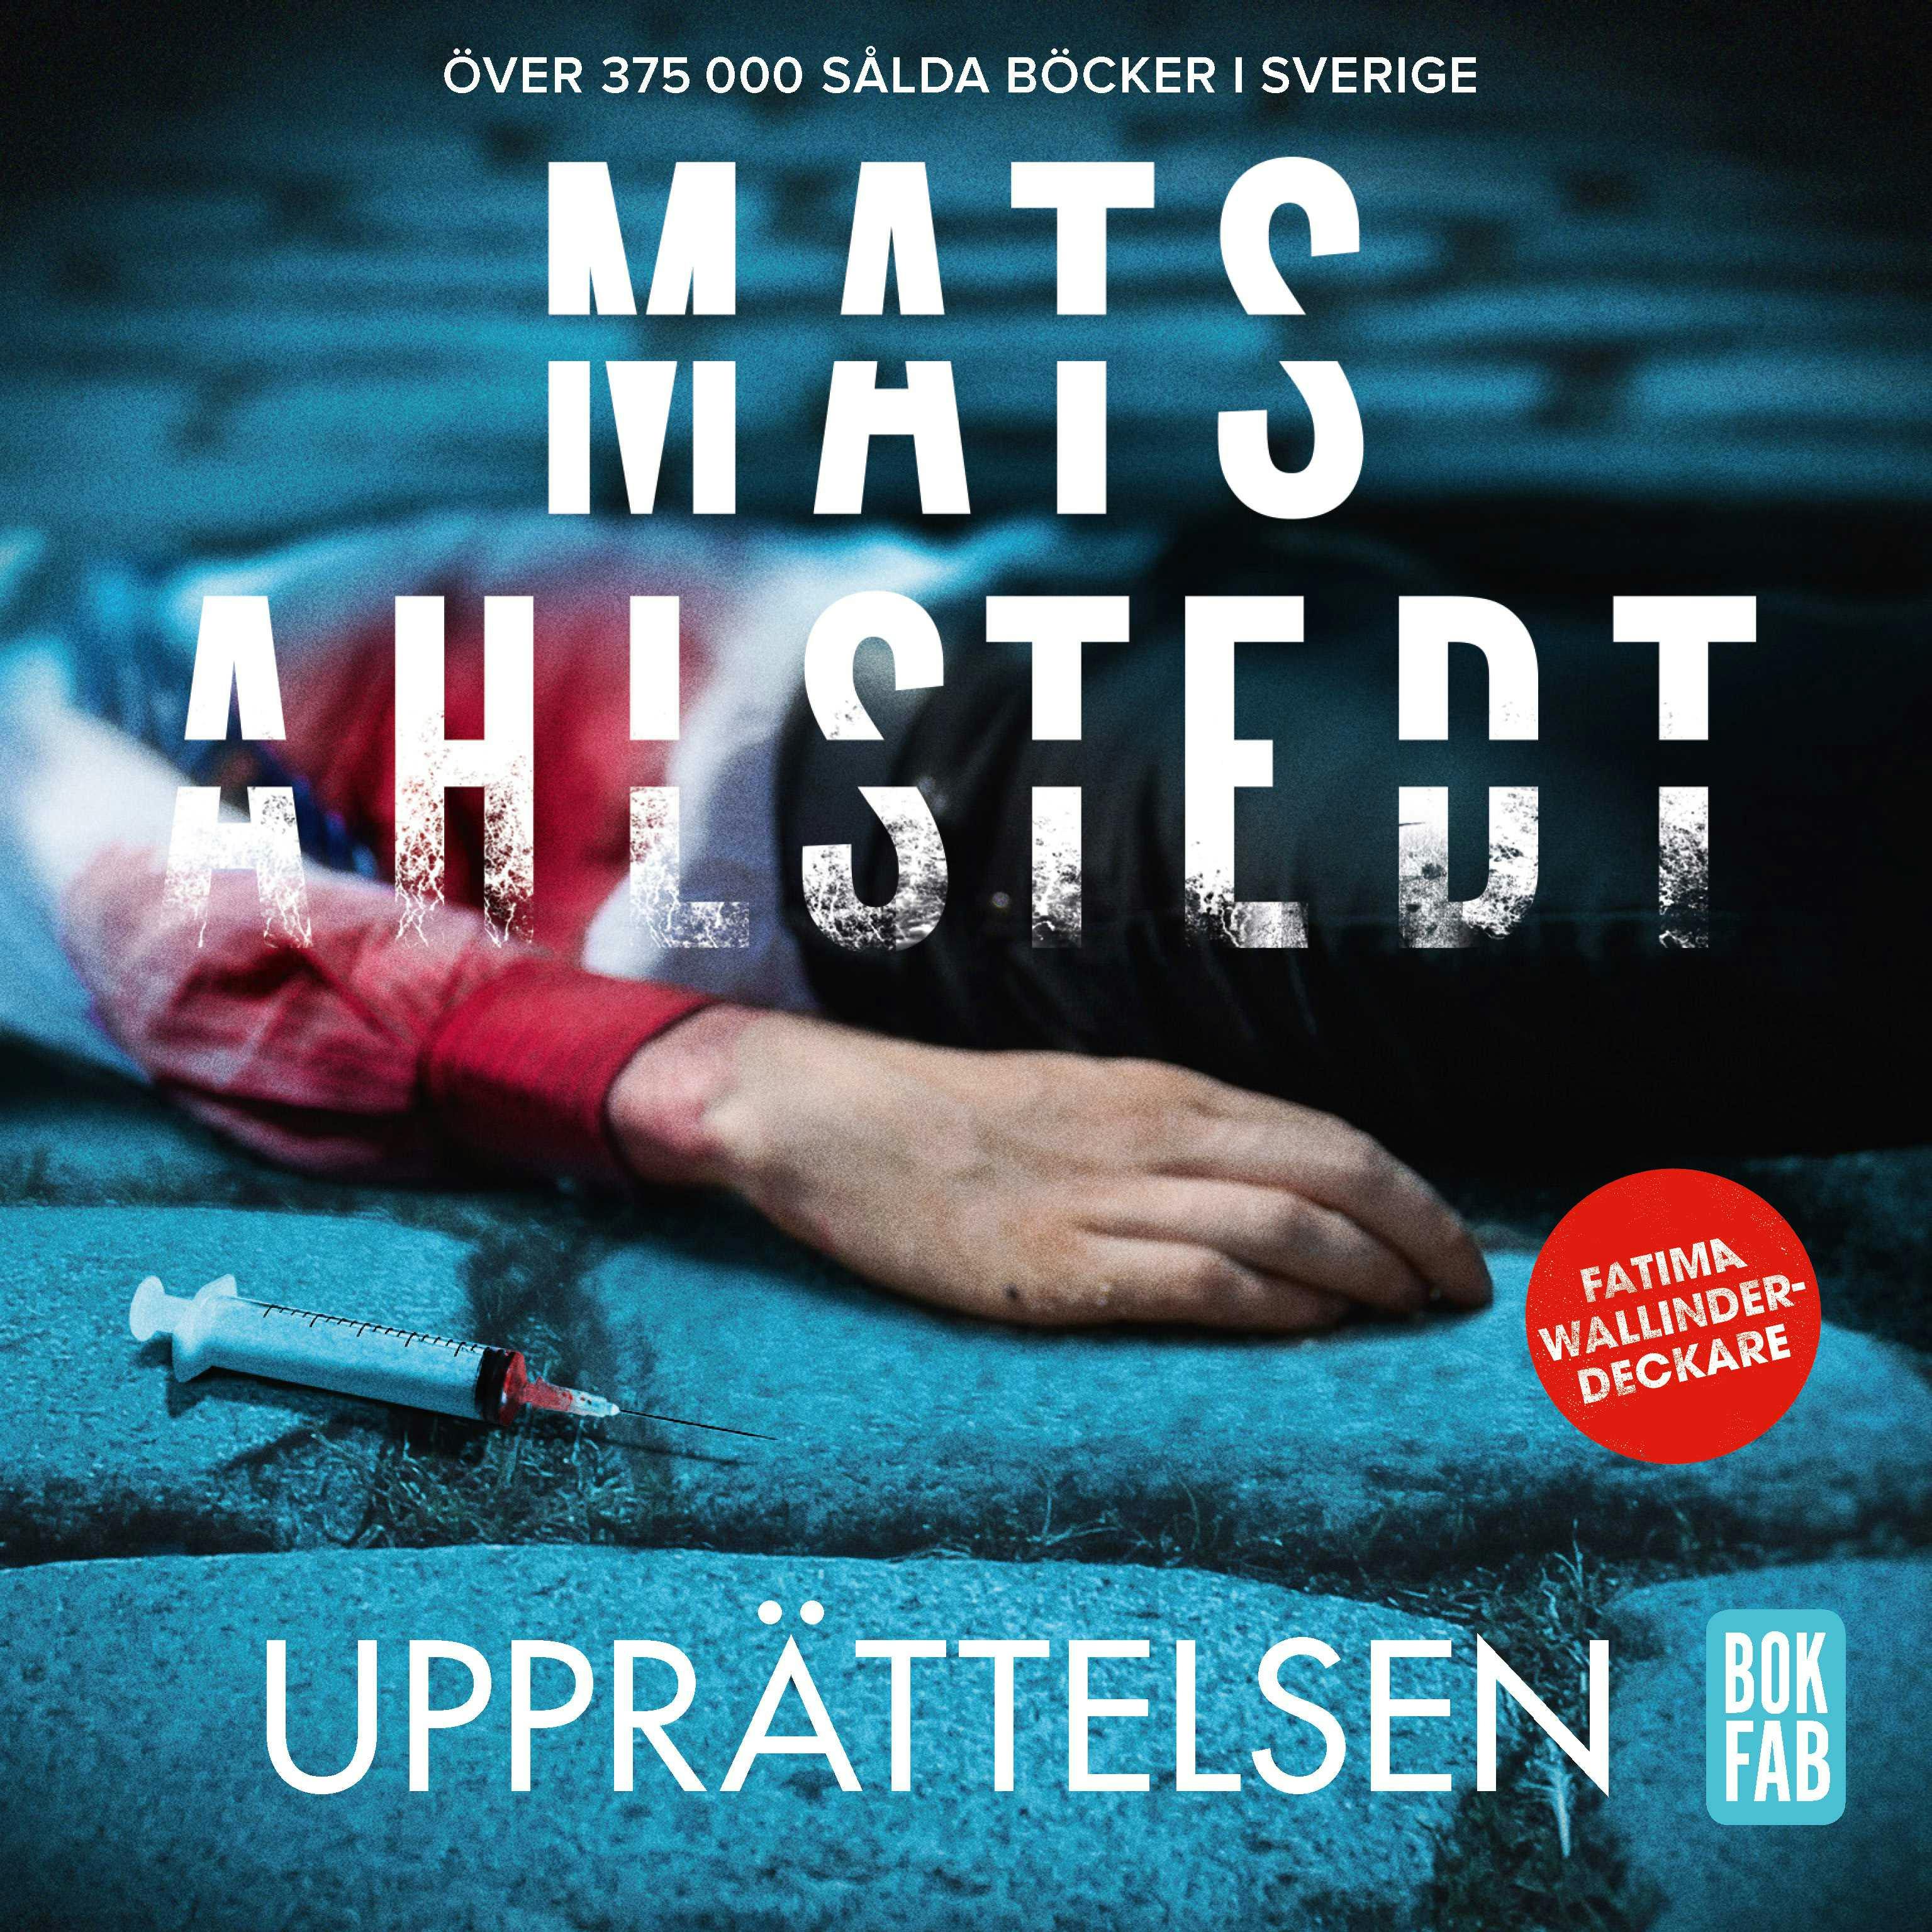 Upprättelsen - Mats Ahlstedt